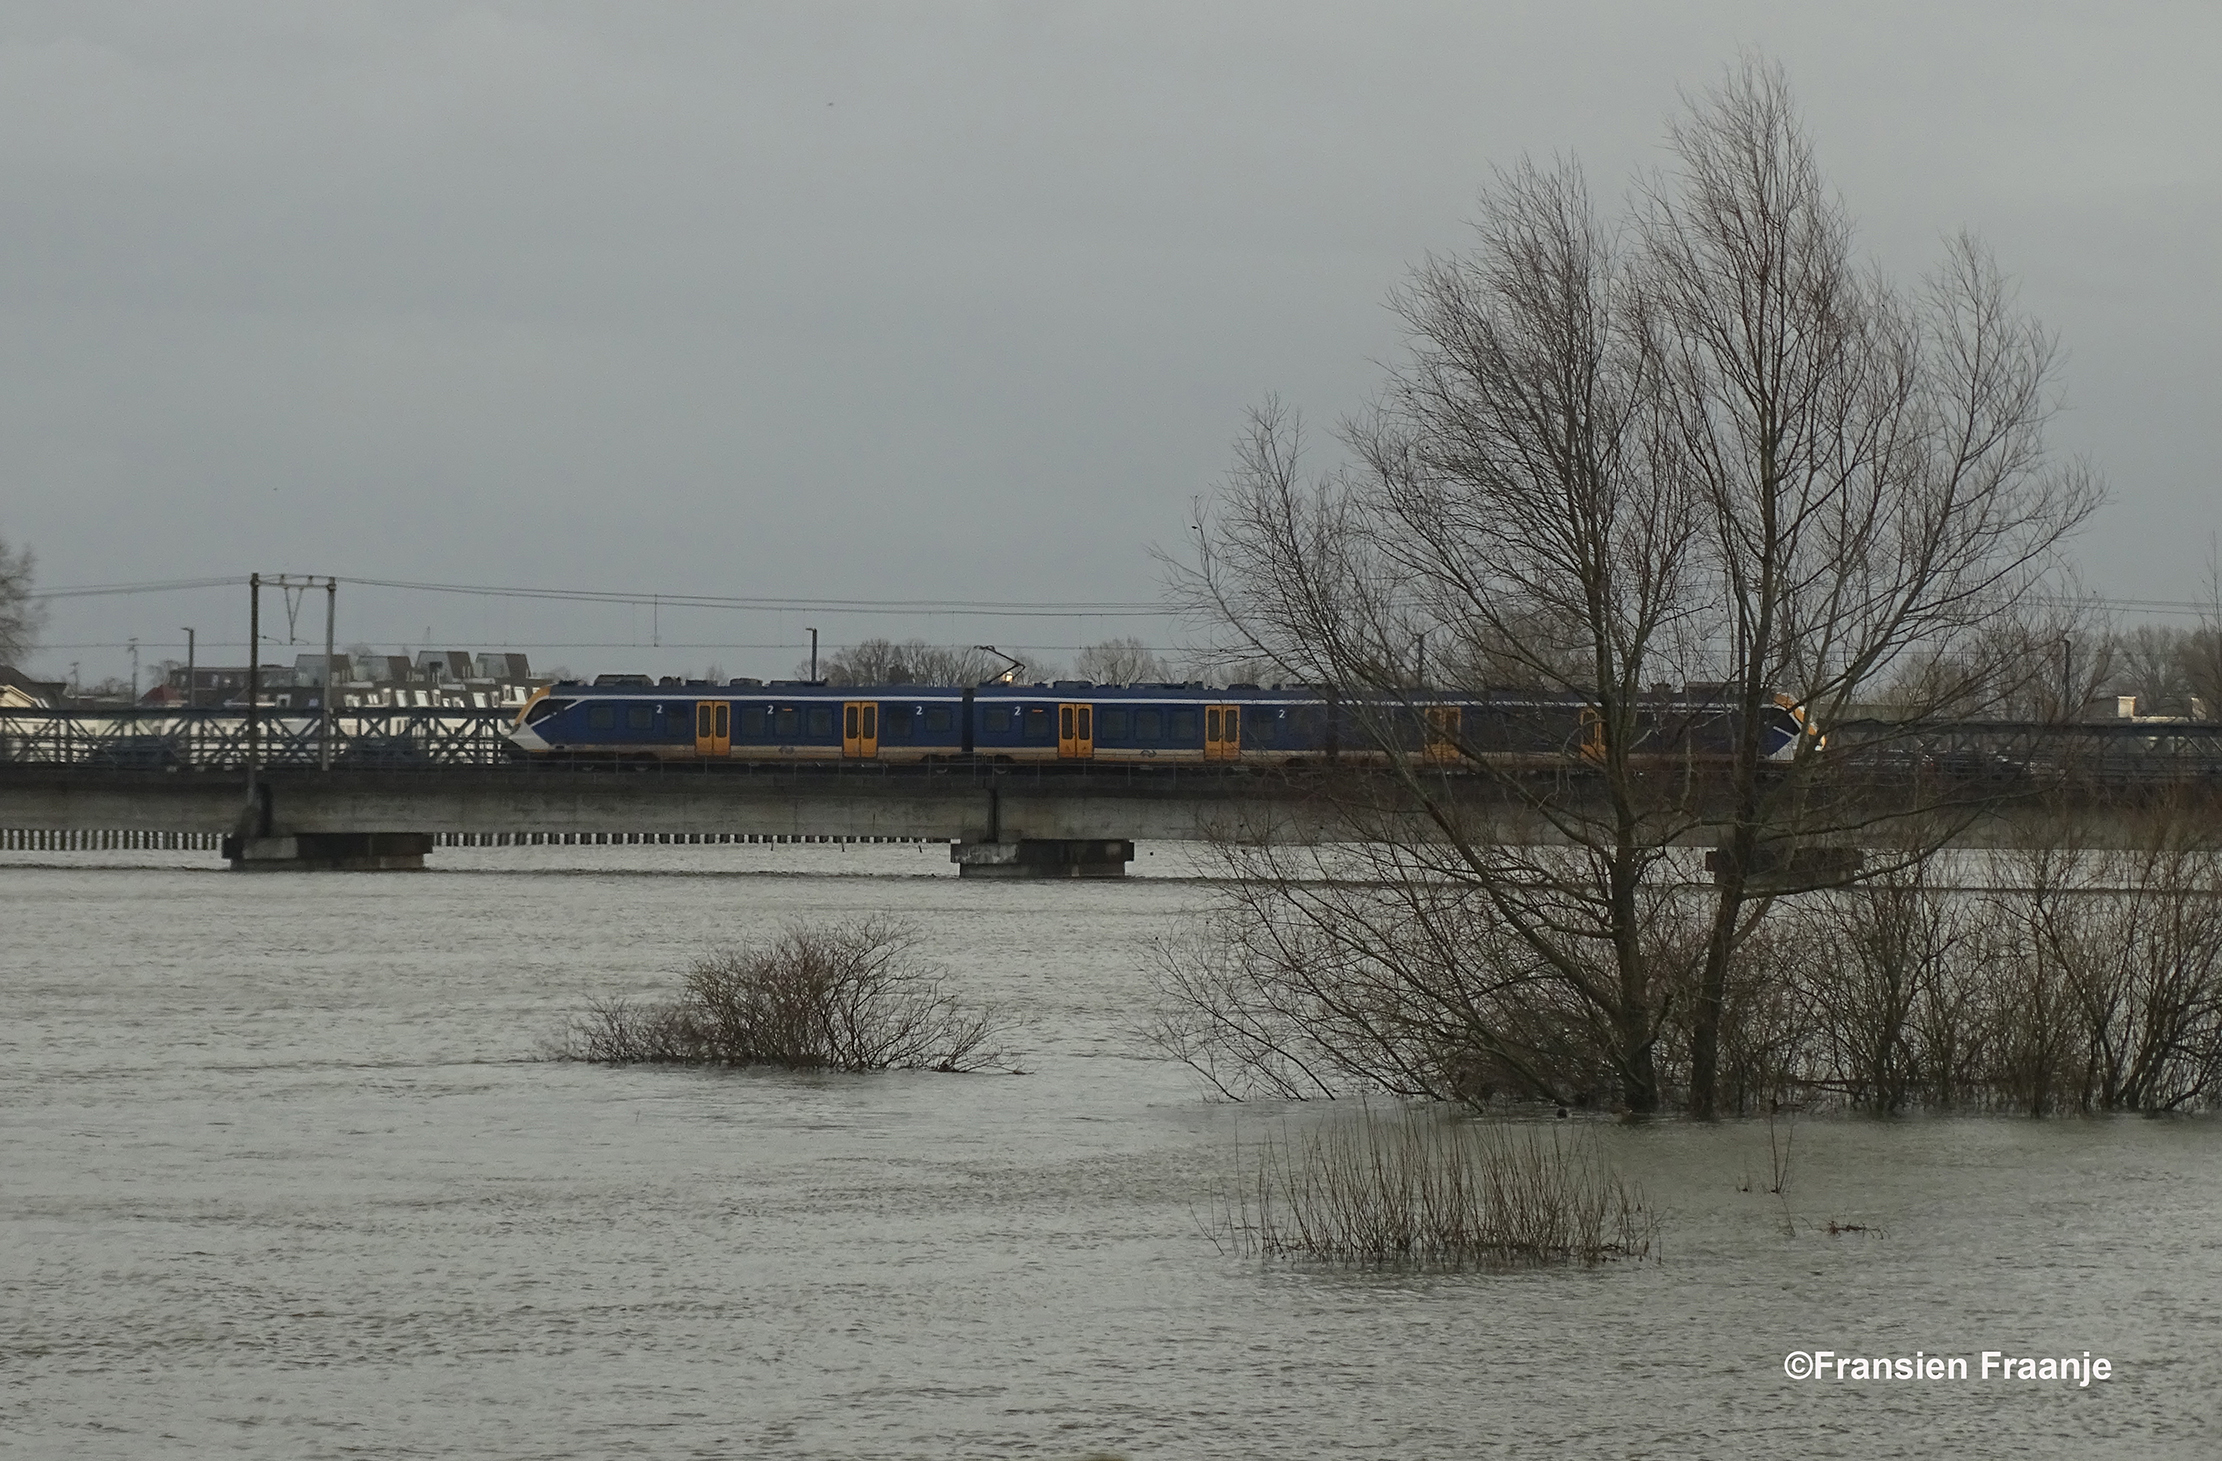  De trein komt net over de brug rijden - Foto: ©Fransien Fraanje